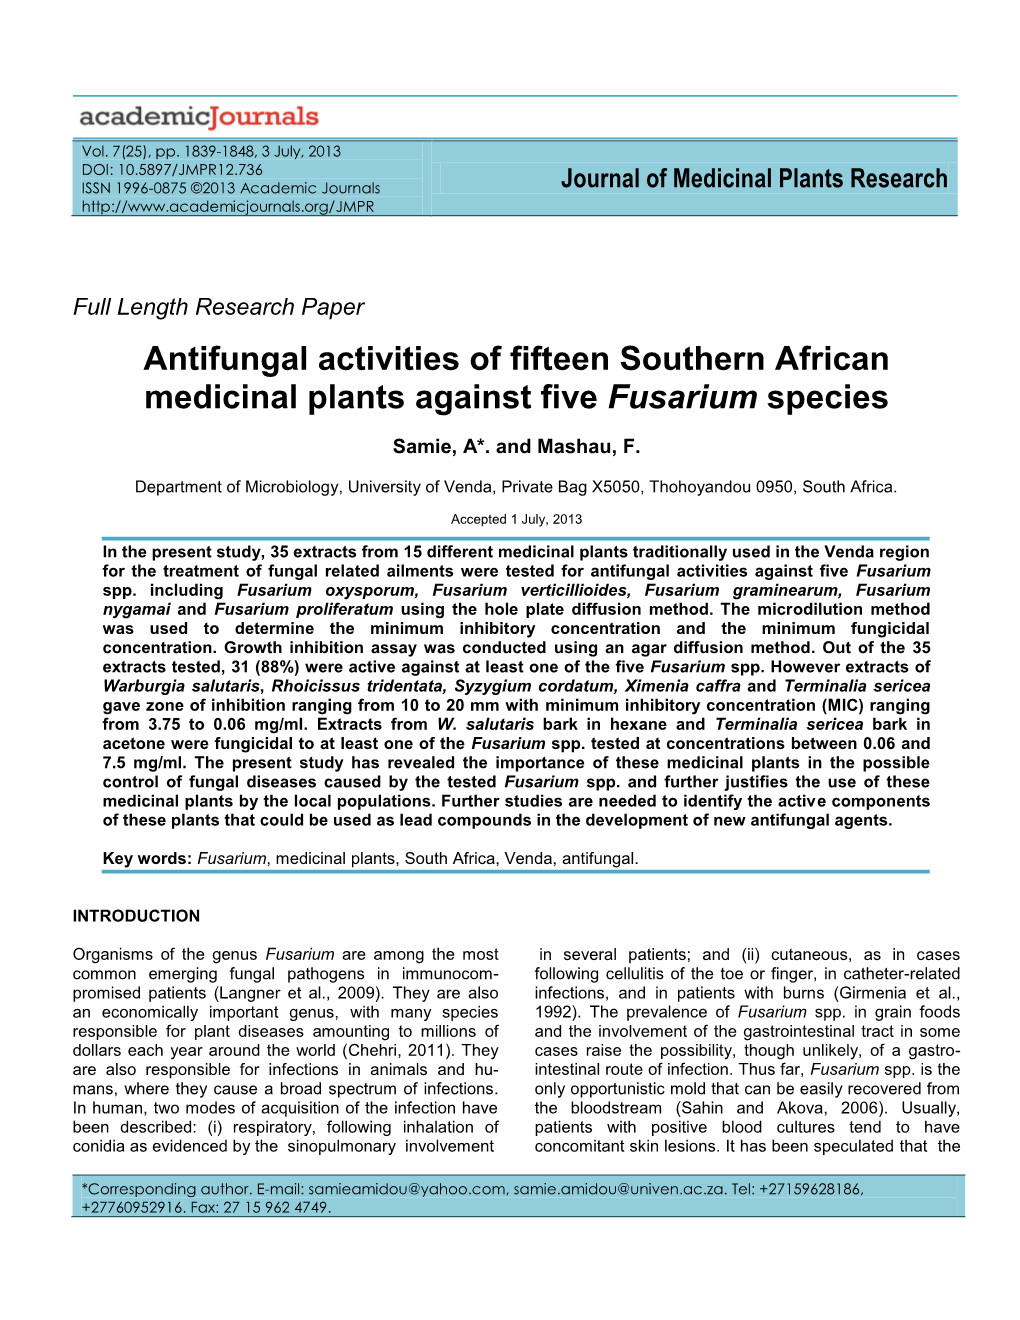 Antifungal Activities of Fifteen Southern African Medicinal Plants Against Five Fusarium Species